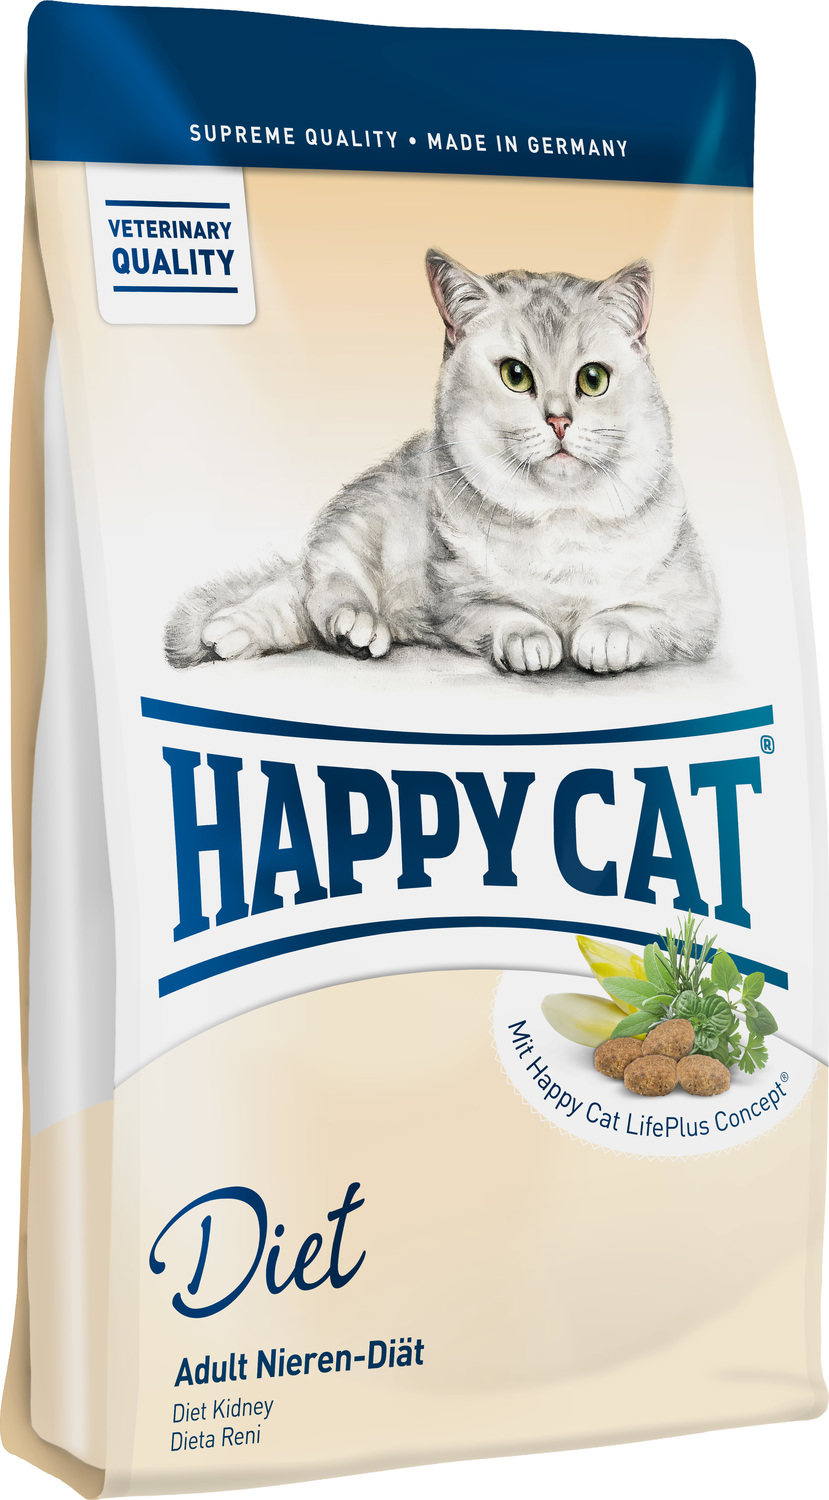 Happy Cat Adult Sensitive Kidney Schonkost Niere - zoom